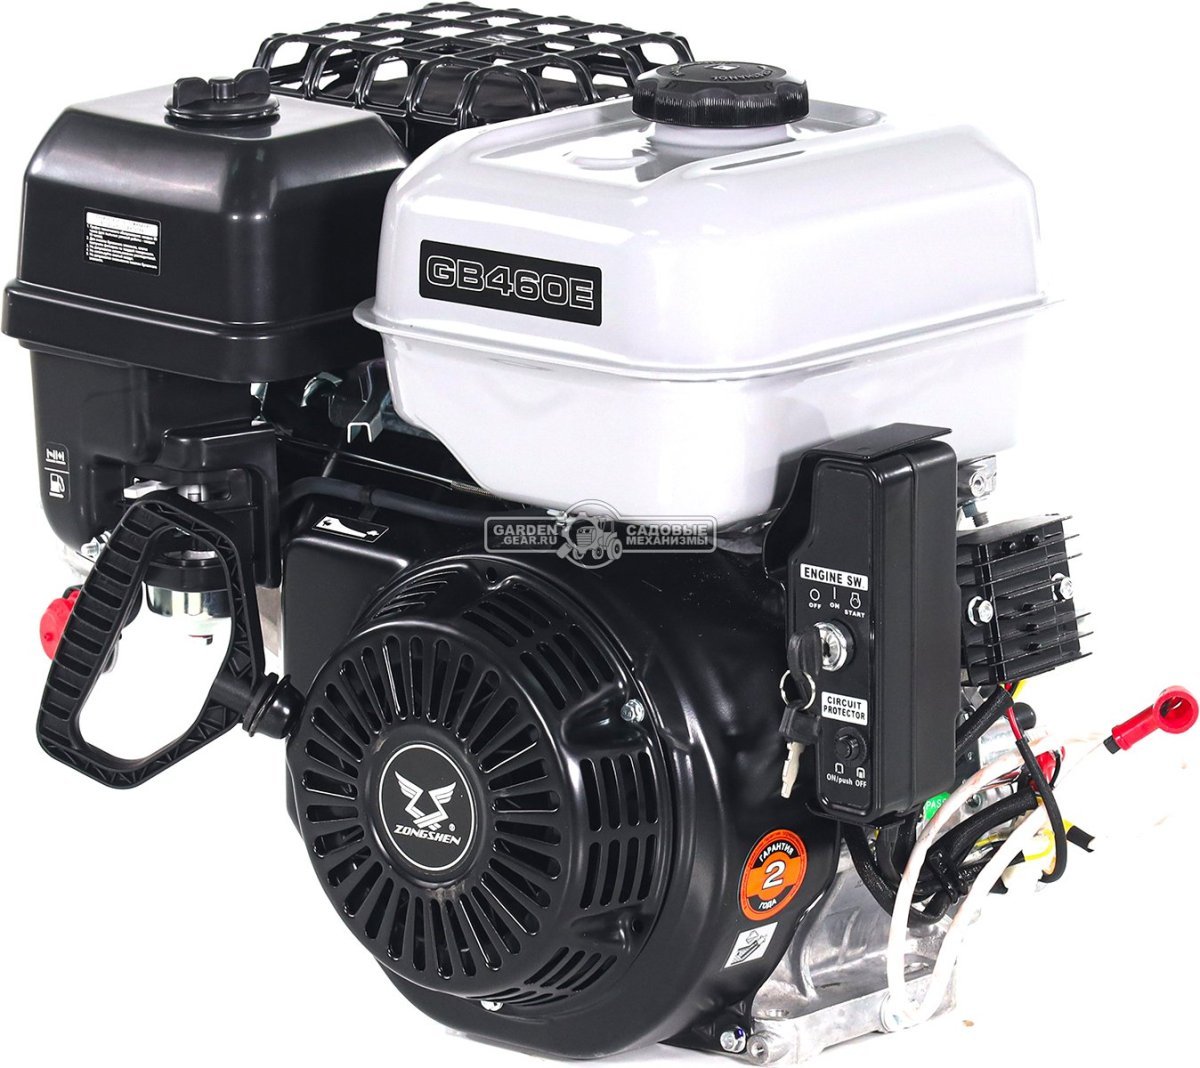 Бензиновый двигатель Zongshen GB460E (PRC, 17,5 л.с., 459 см3. D=25 мм, L= 63 мм, катушка освещения, выпрямитель, электростартер, 33 кг.)